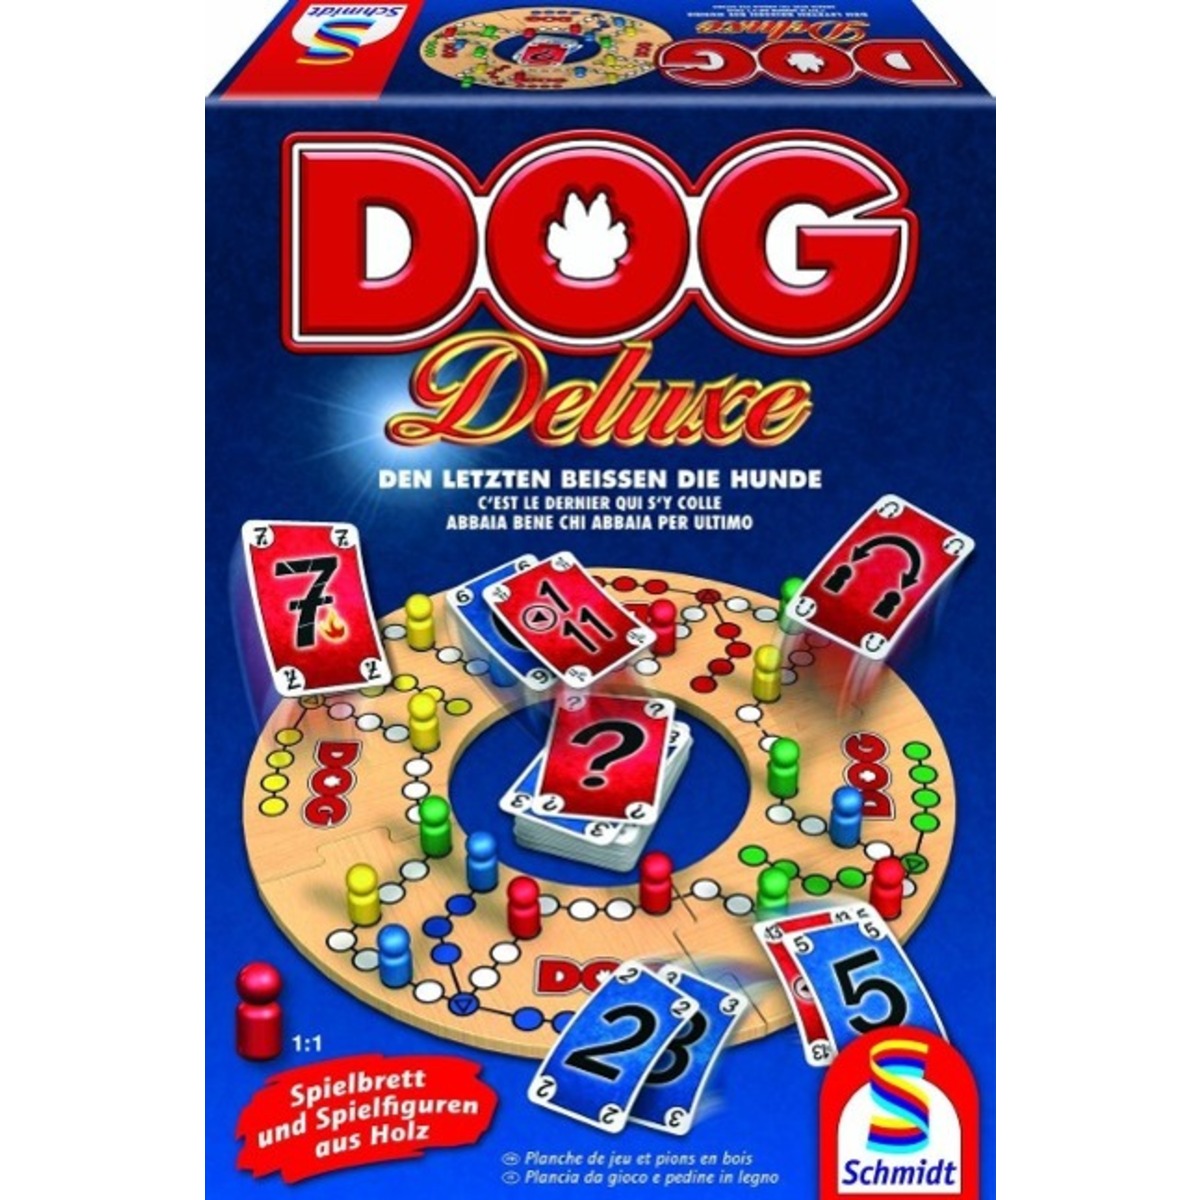 DOG Deluxe von Schmidt Spiele GmbH